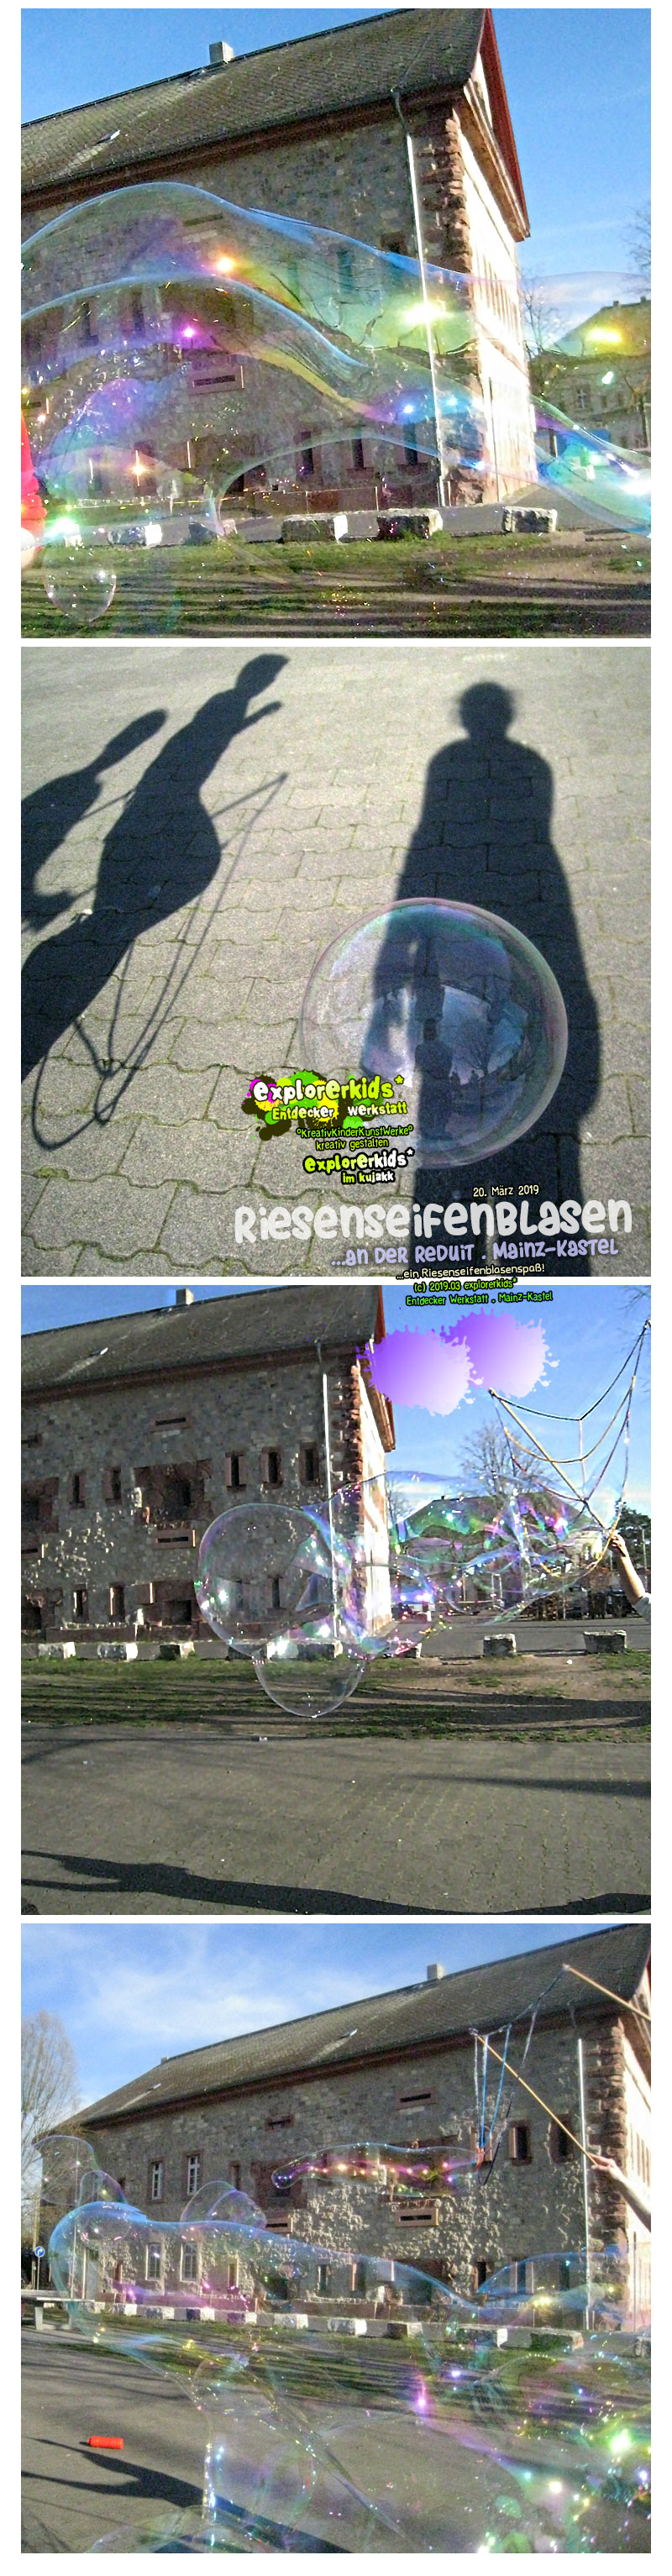 Riesenseifenblasen
...an der Reduit . Mainz-Kastel . explorerkids* . Entdecker Werkstatt im kujakk